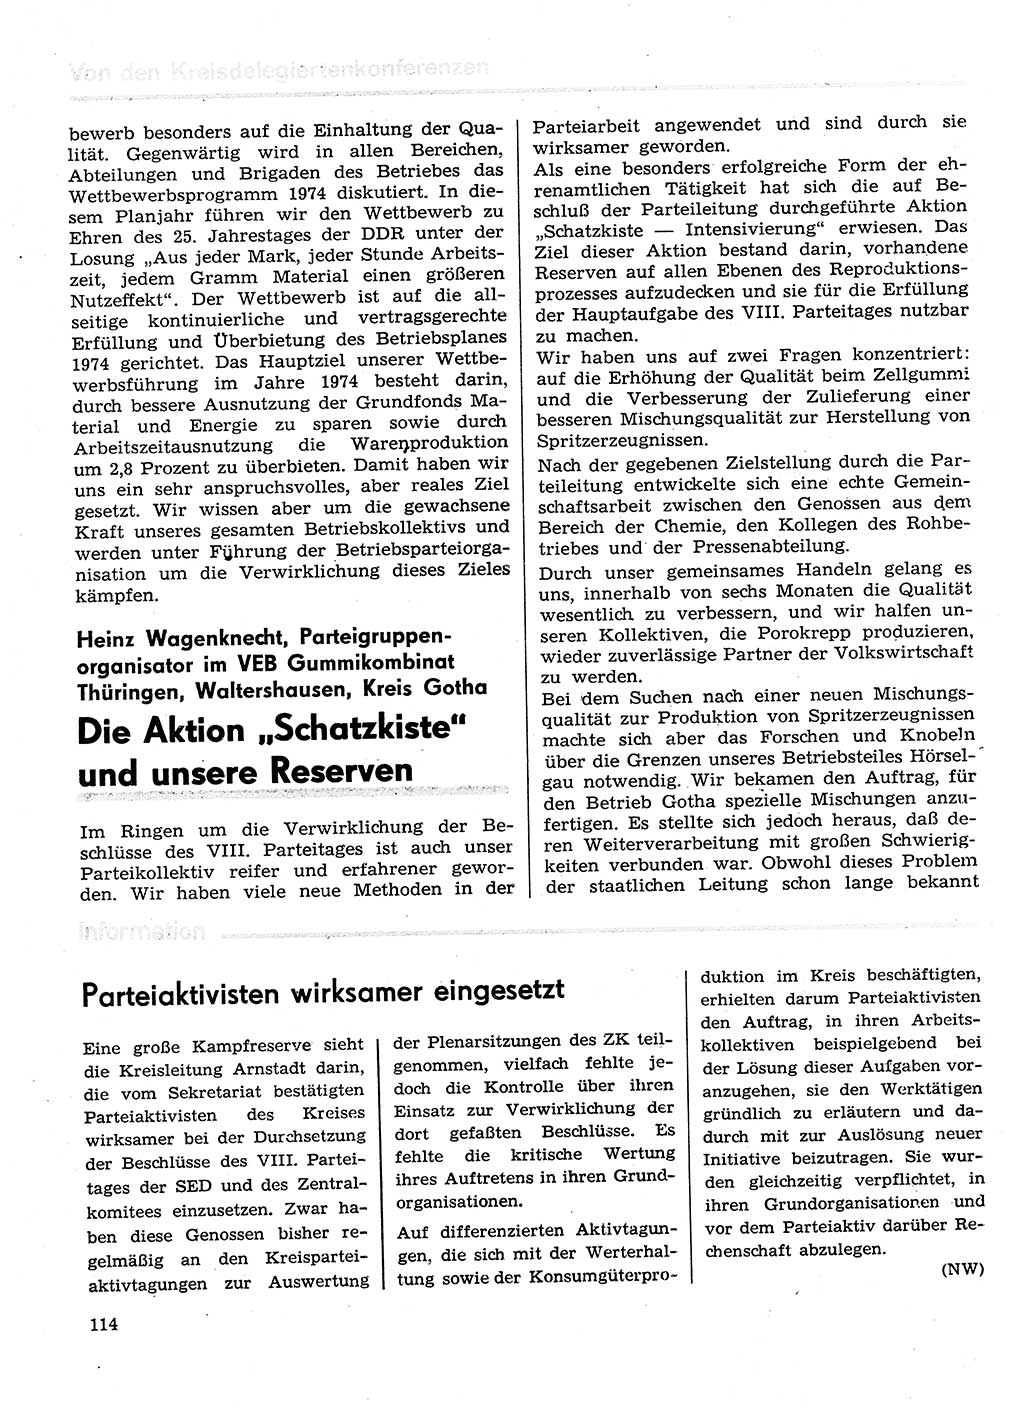 Neuer Weg (NW), Organ des Zentralkomitees (ZK) der SED (Sozialistische Einheitspartei Deutschlands) für Fragen des Parteilebens, 29. Jahrgang [Deutsche Demokratische Republik (DDR)] 1974, Seite 114 (NW ZK SED DDR 1974, S. 114)